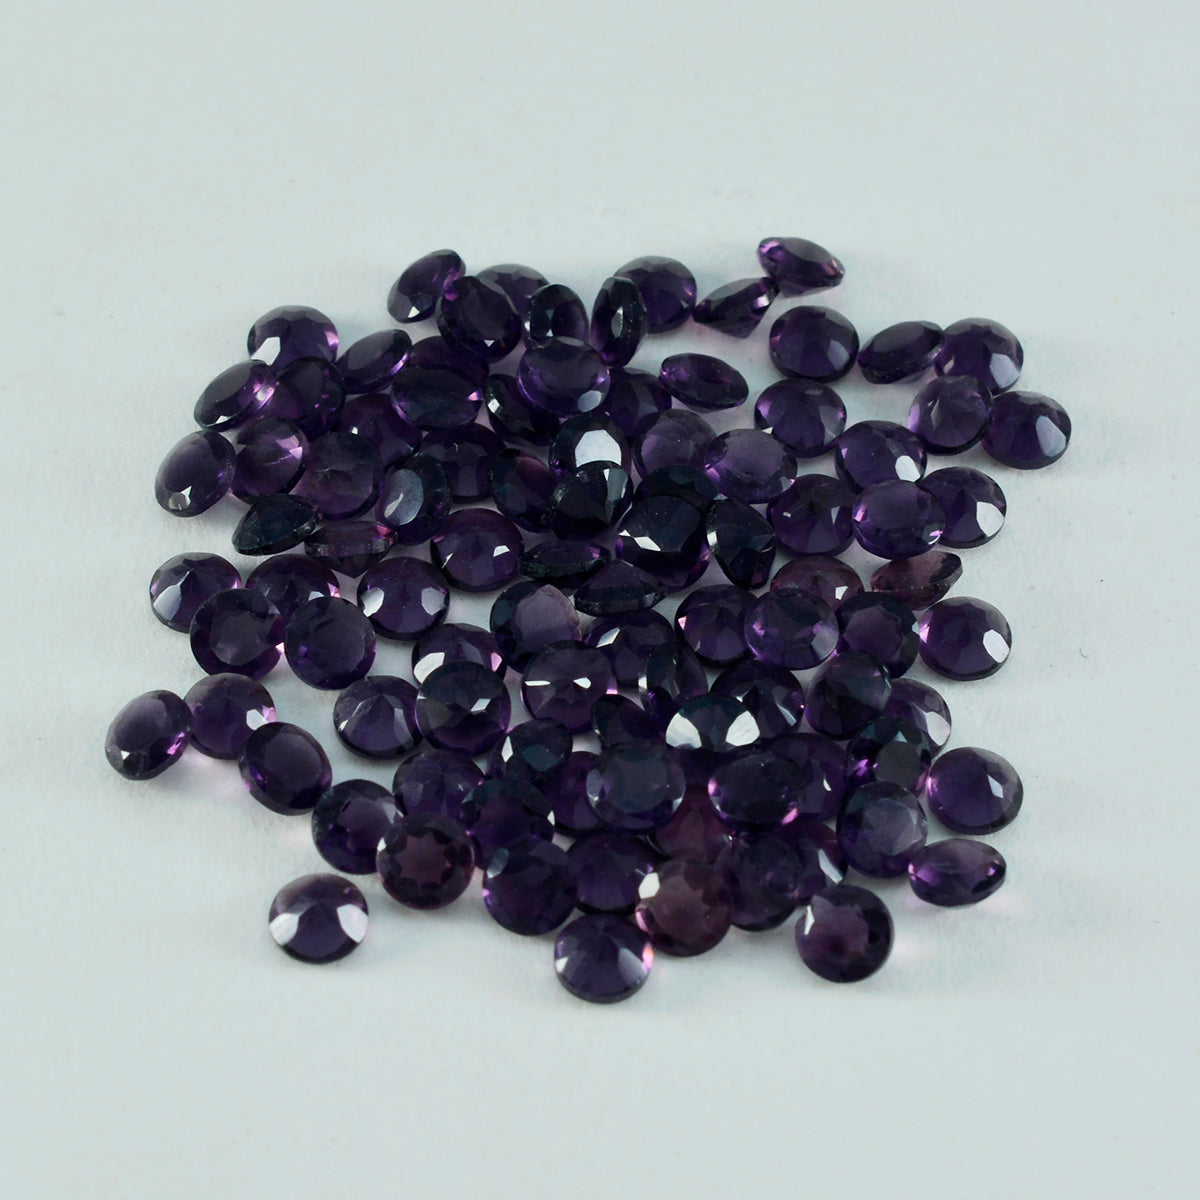 riyogems 1шт фиолетовый аметист cz ограненный 2x2 мм круглый камень хорошего качества